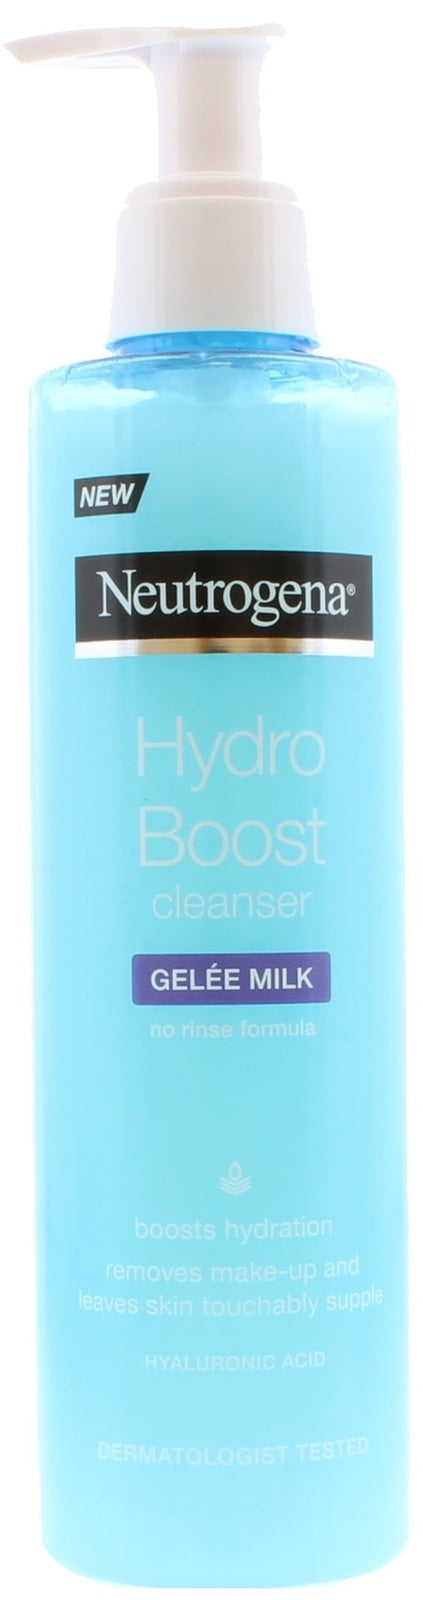 Neutrogena: Hydro Boost Cleanser - Gelee Milk (200ml)